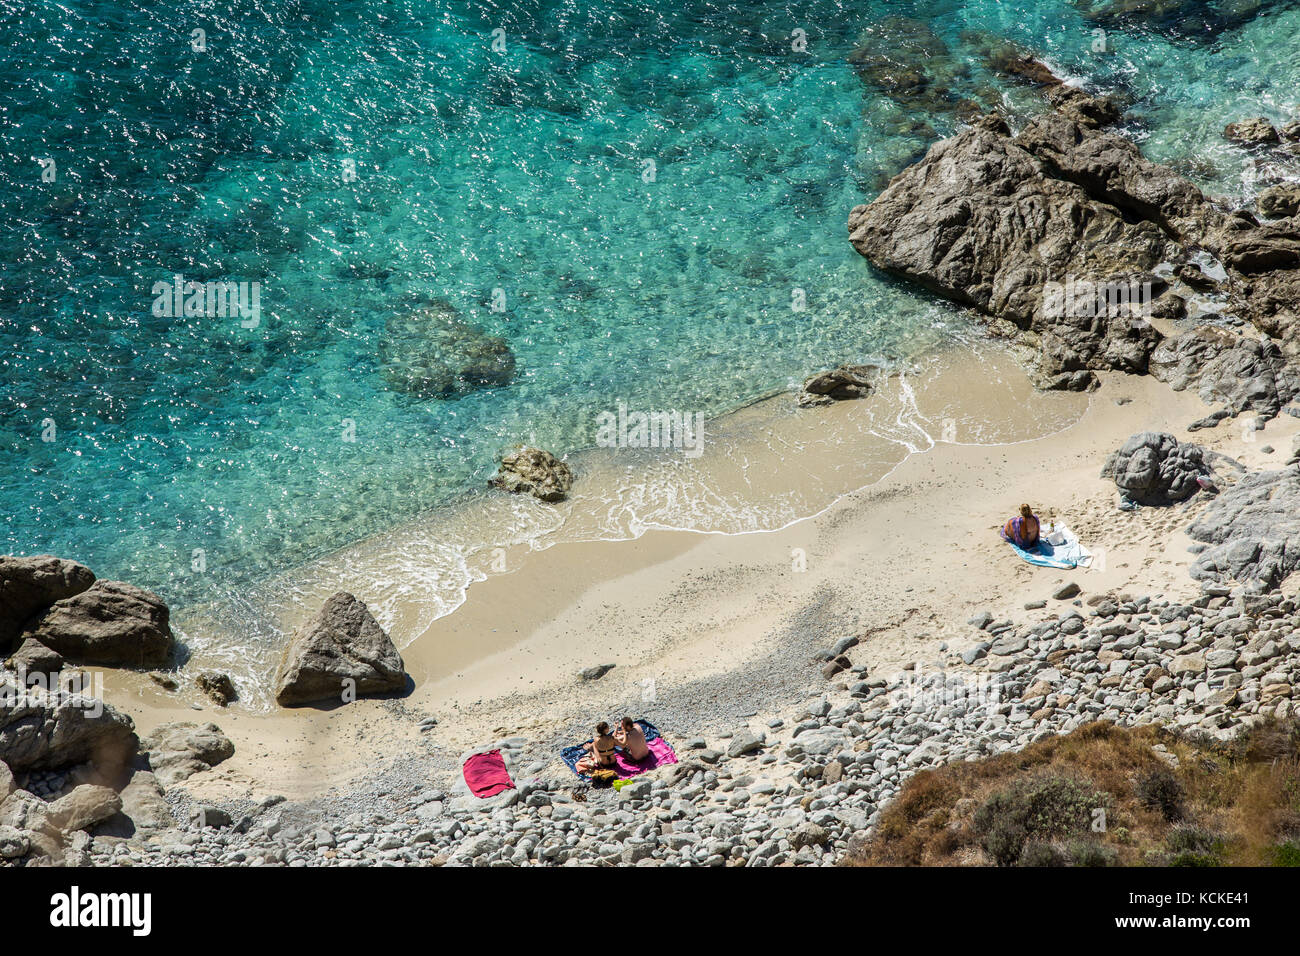 La plage nommée 'Praia je focu' près de Capo Vaticano, dans le sud de l'Italie Banque D'Images